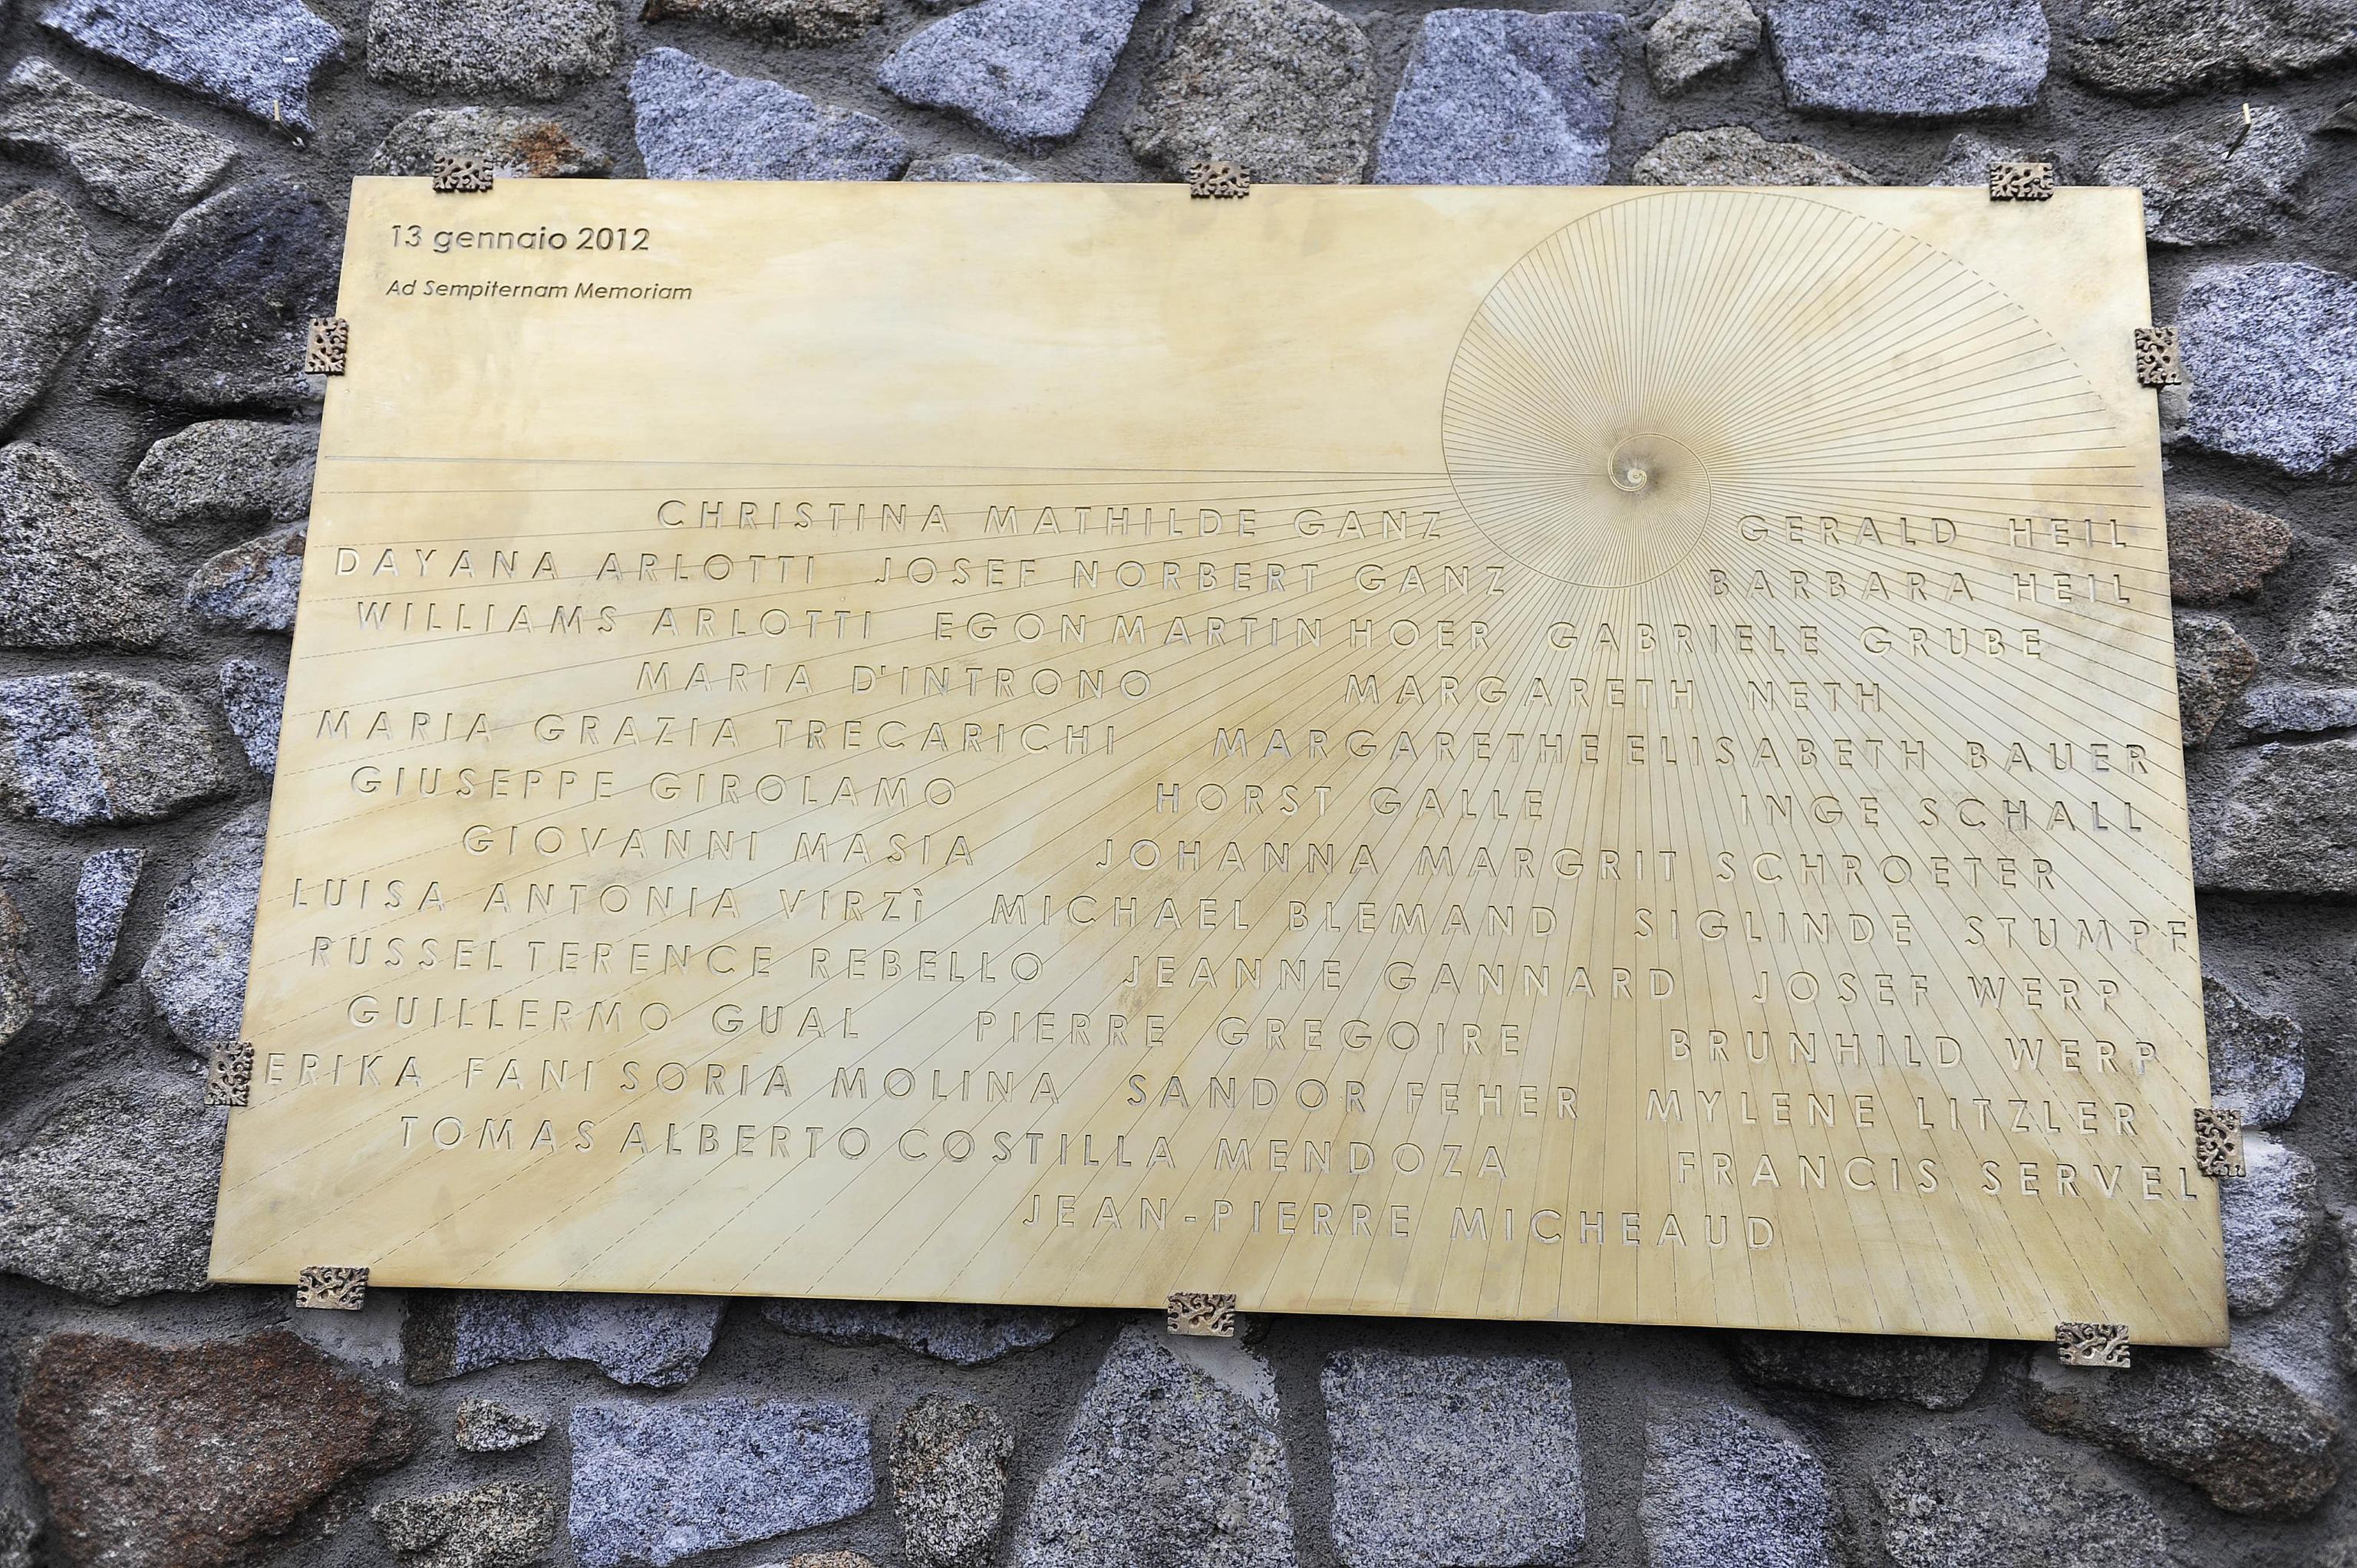 La lapide a ricordo delle vittime della Costa Concordia, posta sul Molo Rosso del porto dell'Isola del Giglio